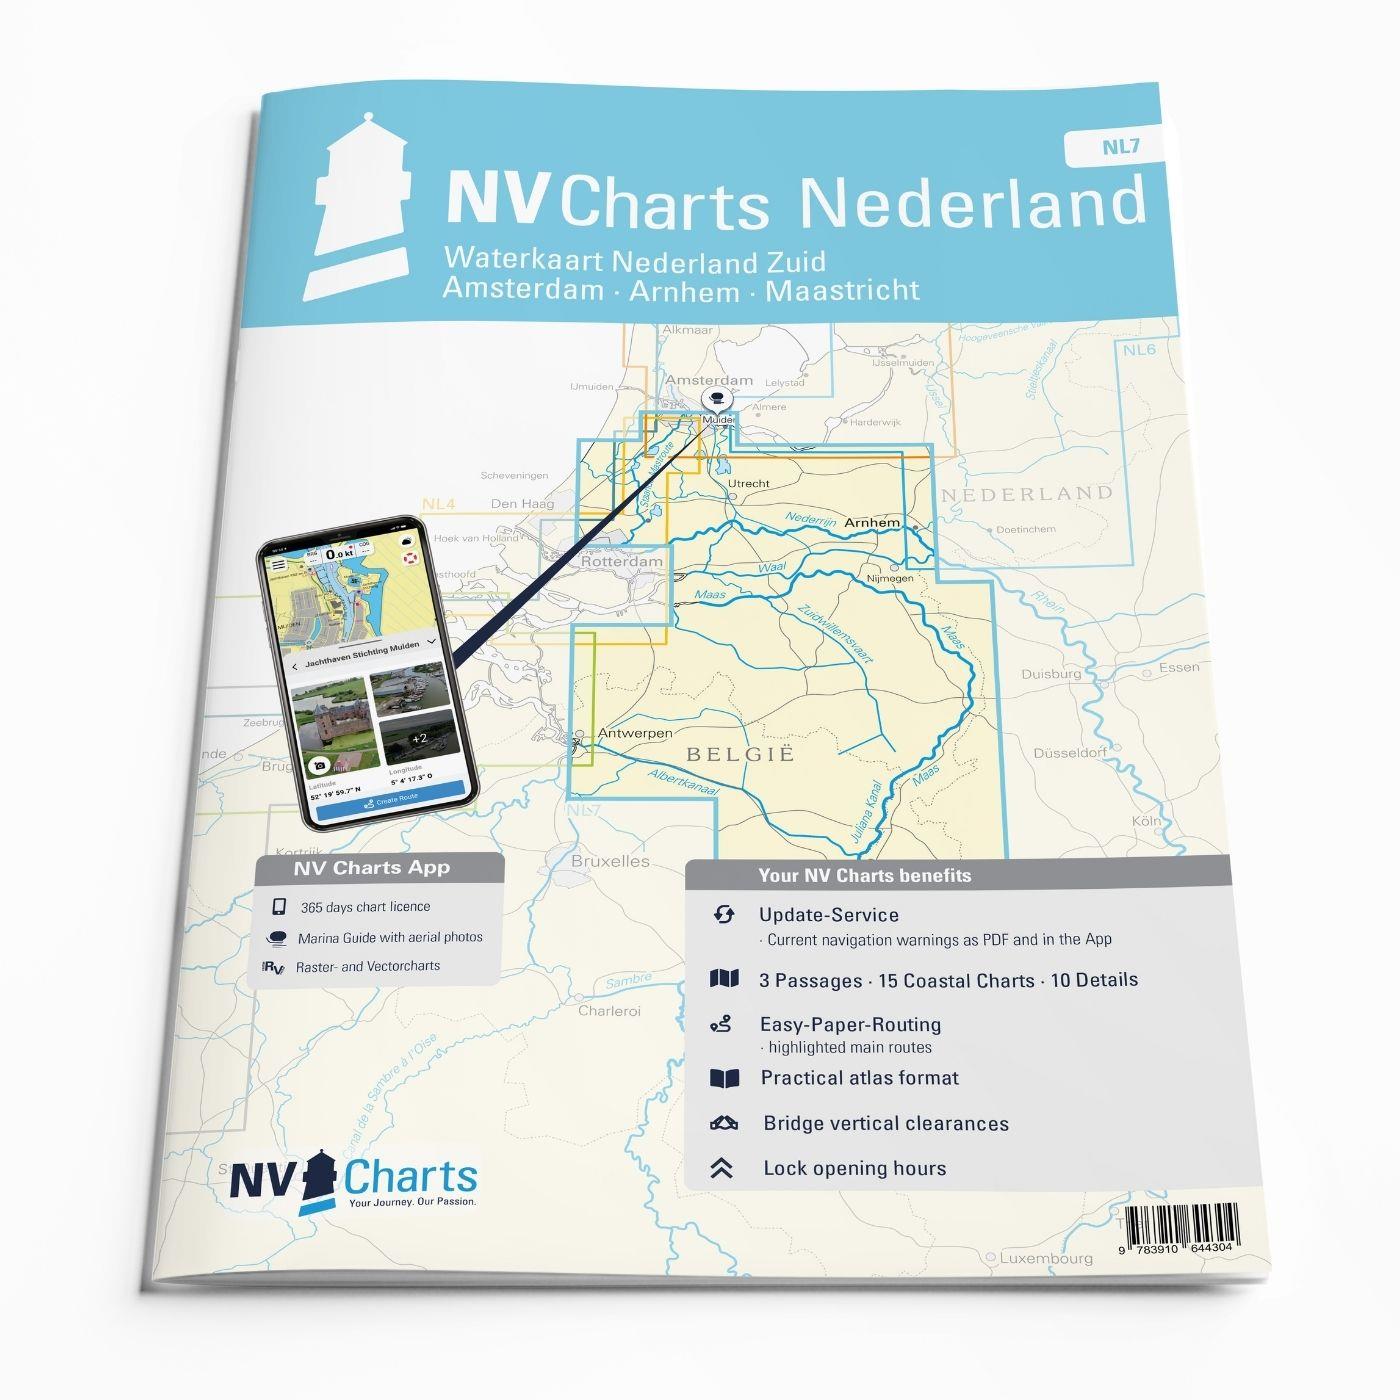 NV Charts Nederland NL7 - Waterkaart Nederland Zuid - Amsterdam - Arnhem - Maastricht